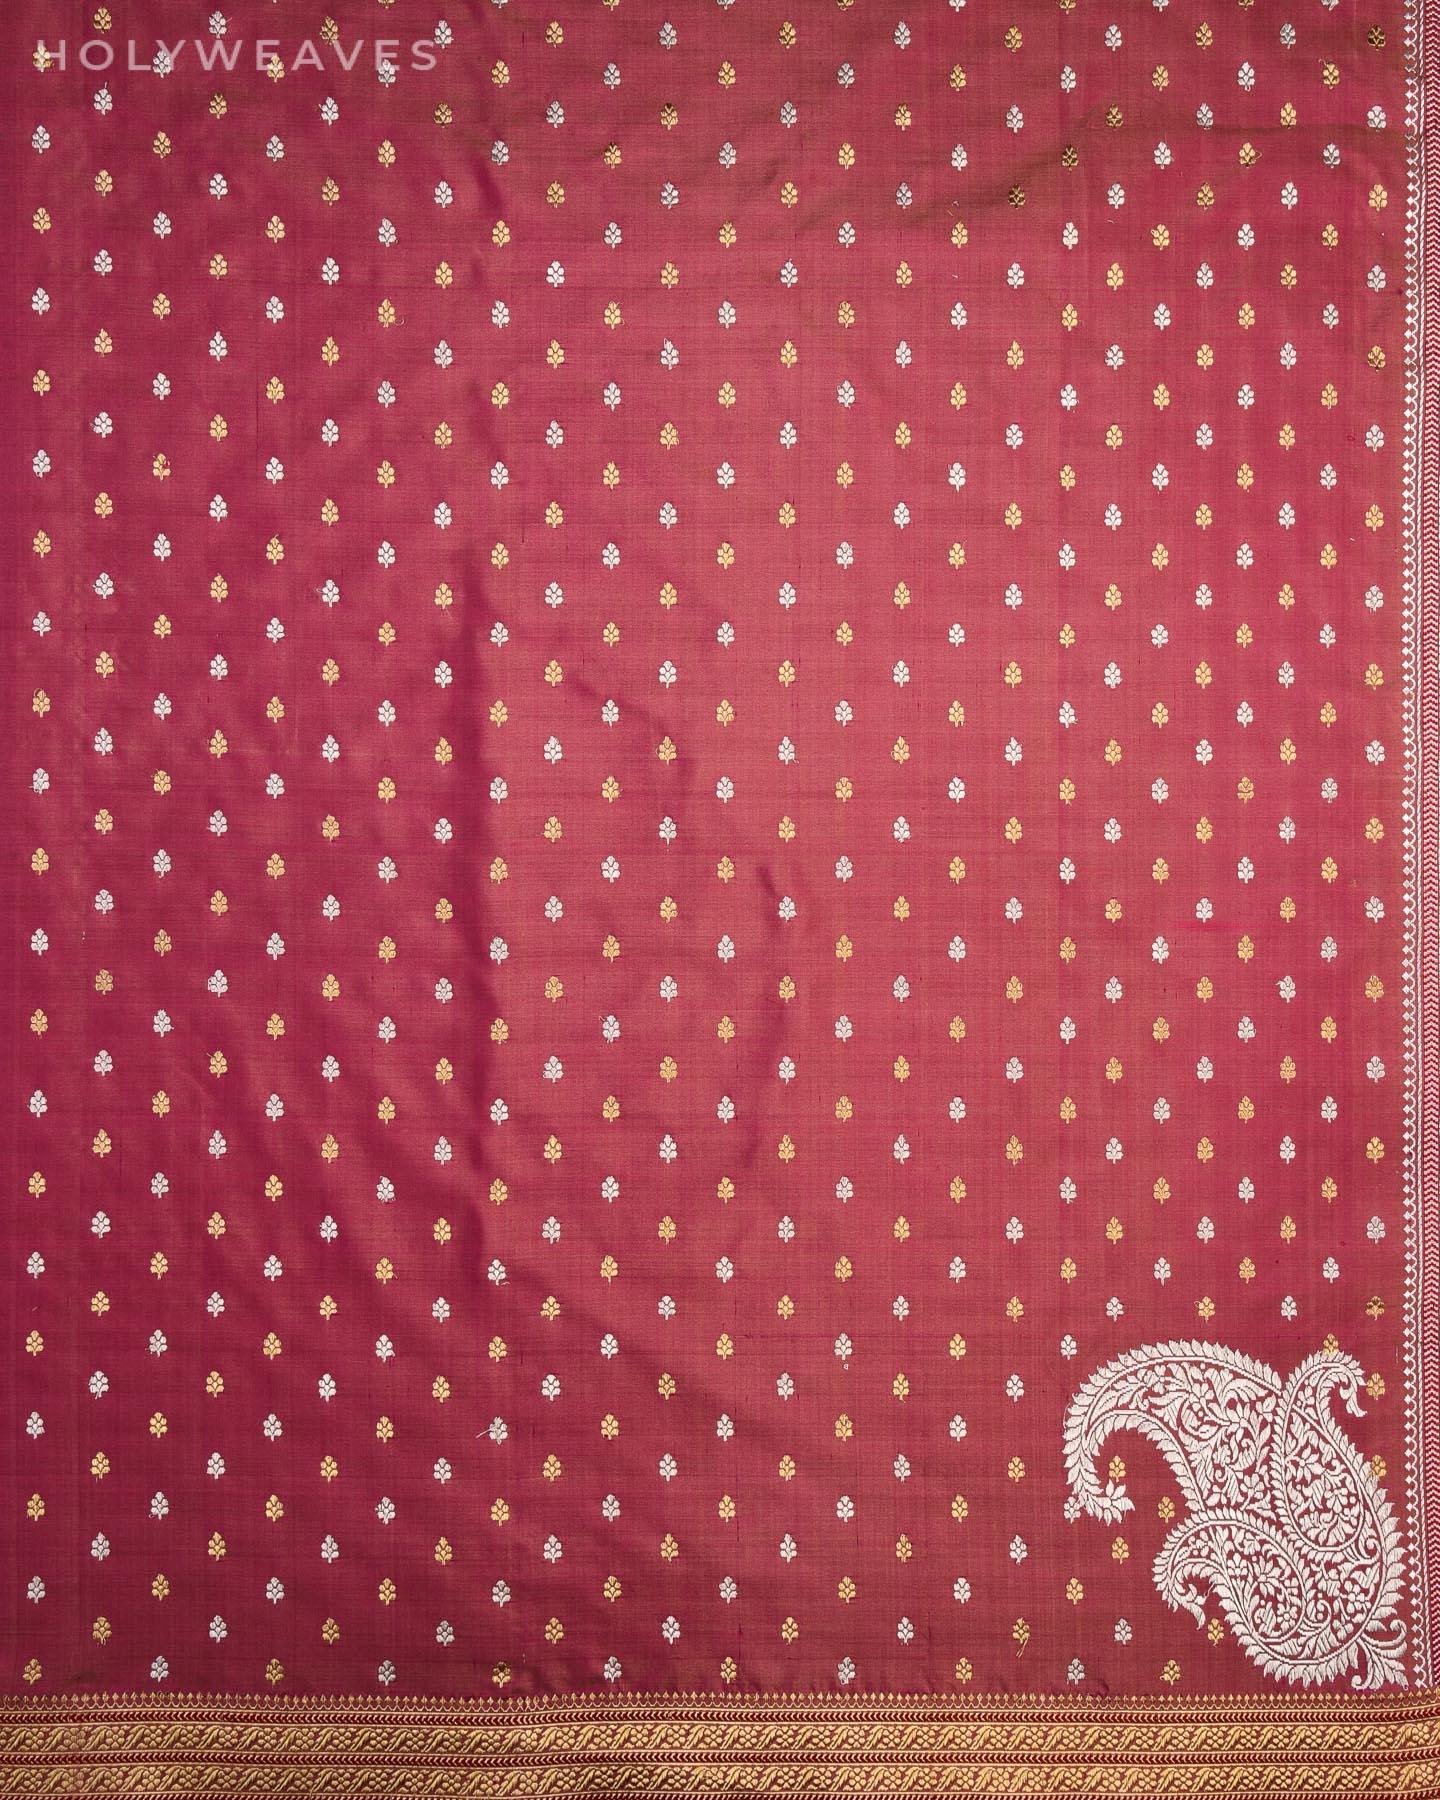 Garnet Banarasi Alfi Sona Rupa Kadhuan Brocade Handwoven Katan Silk Saree - By HolyWeaves, Benares